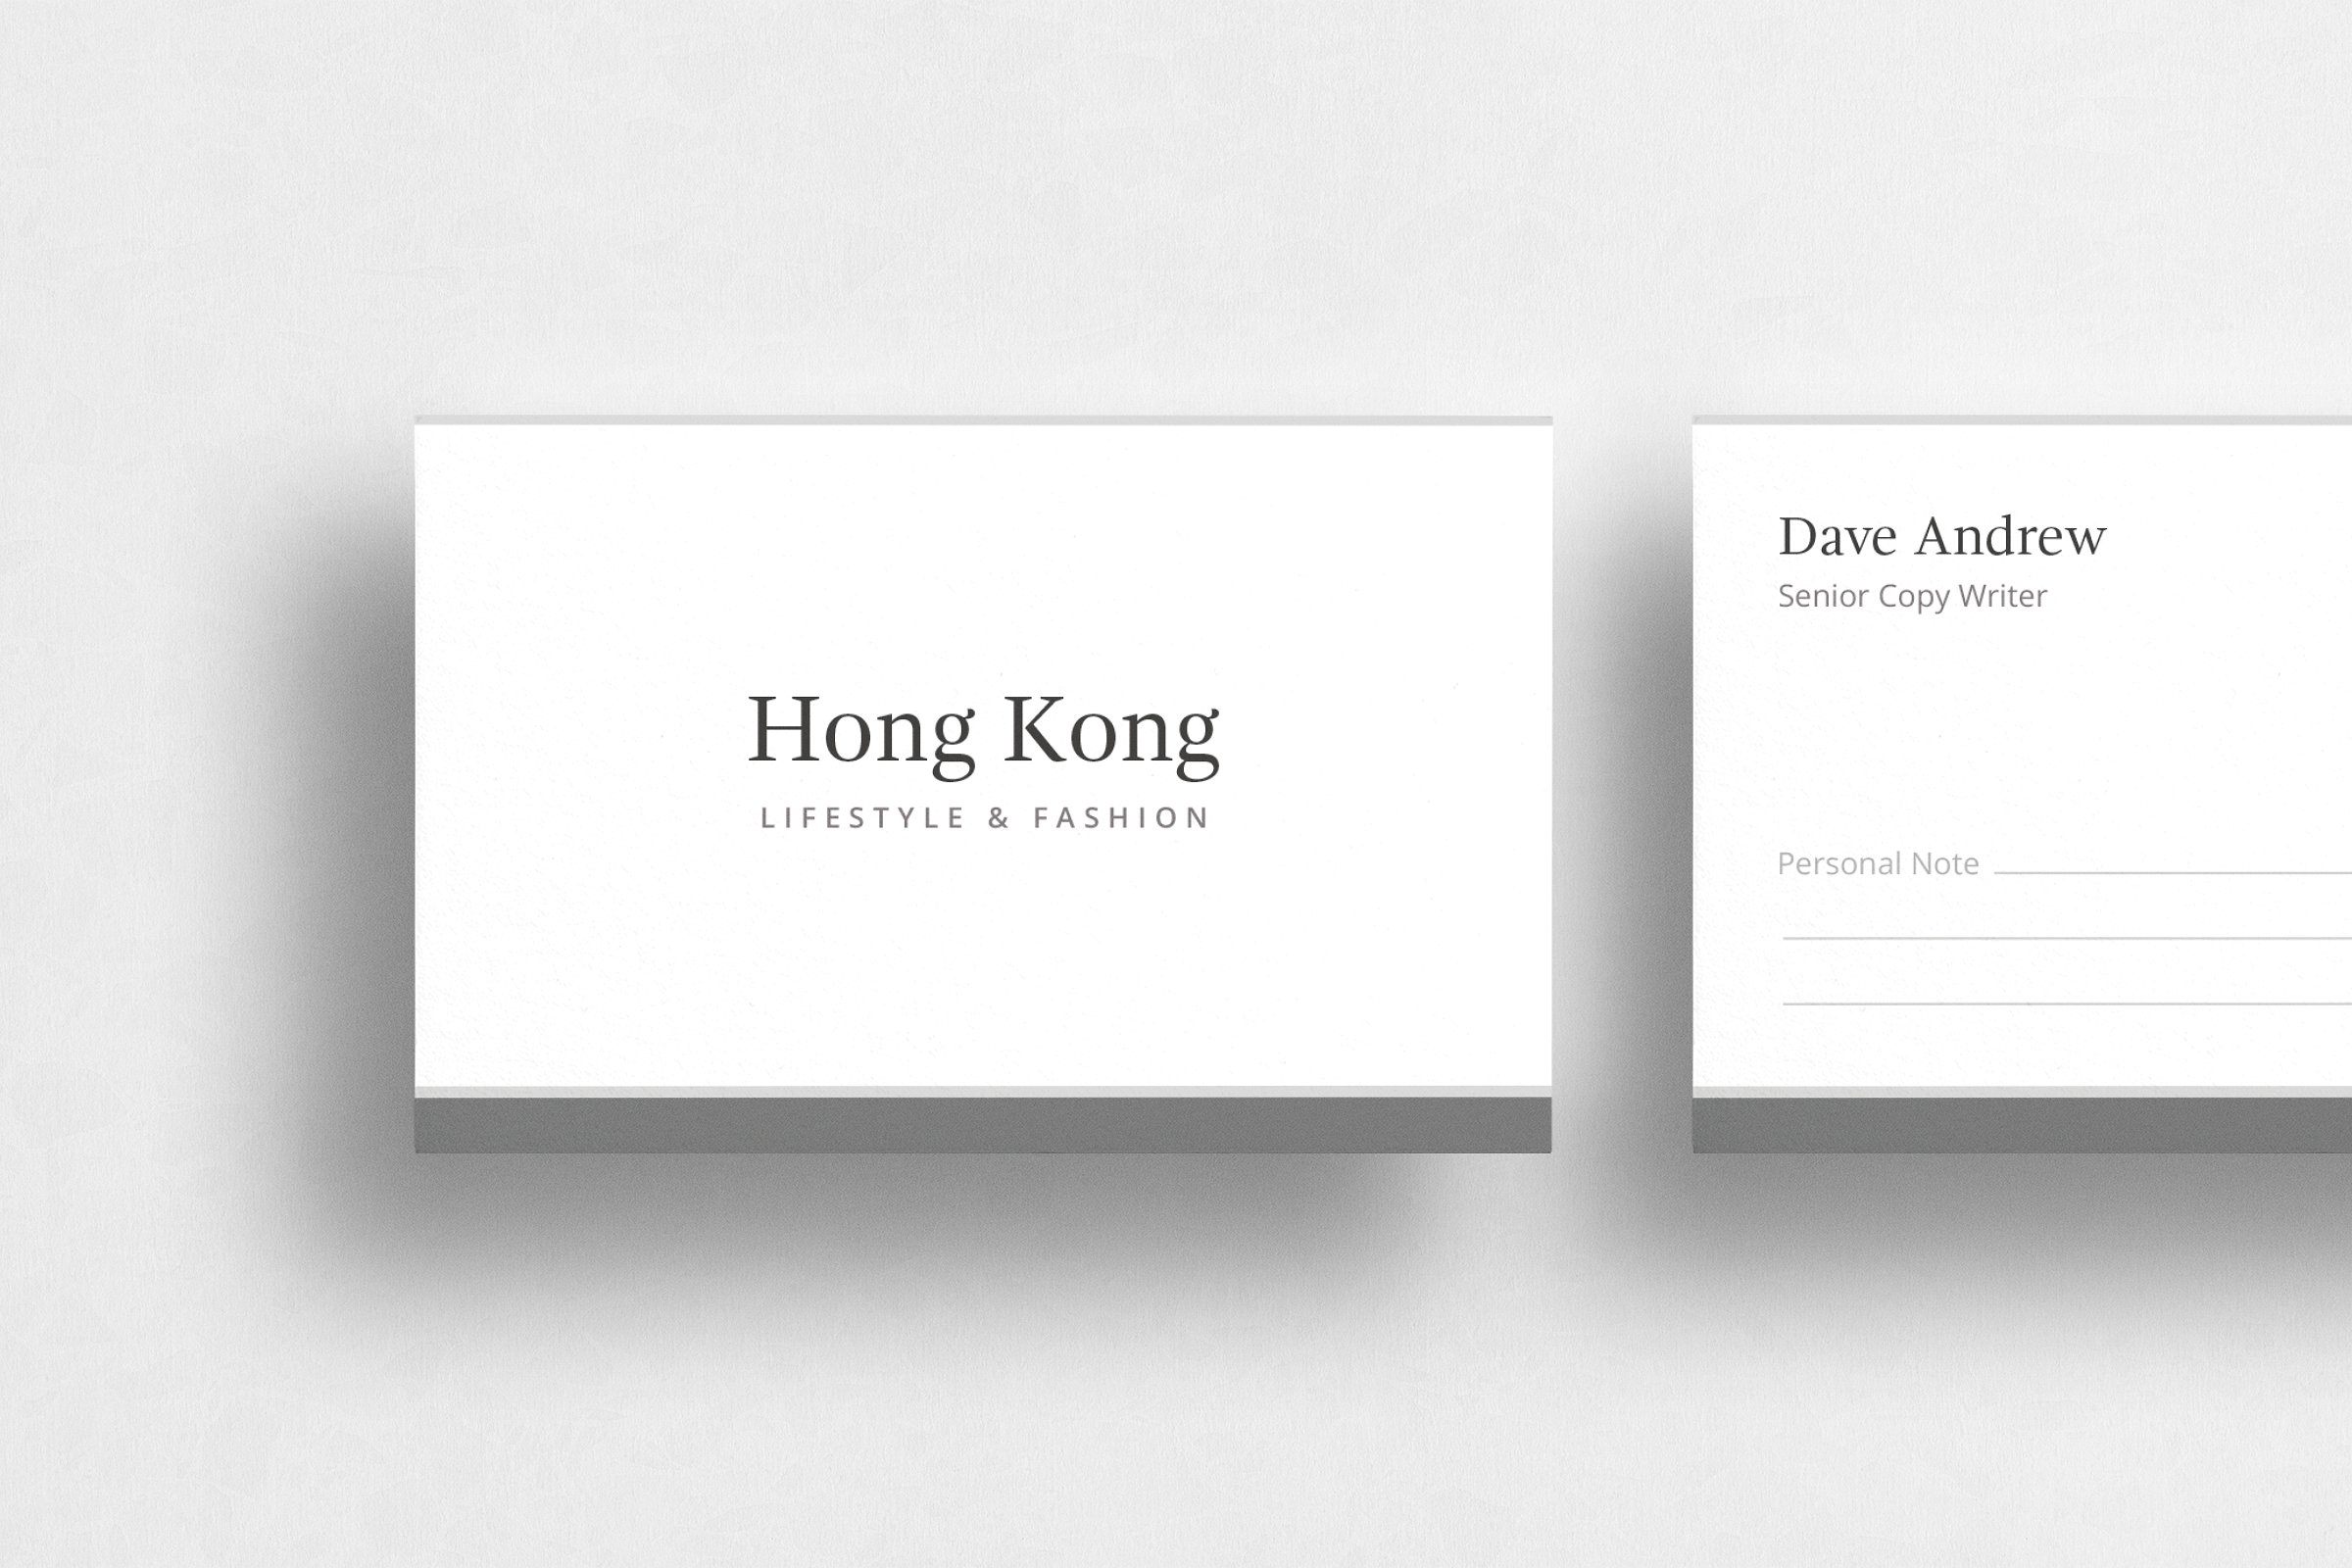 极简主义企业名片设计模板4 Hong Kong Business Card插图(1)